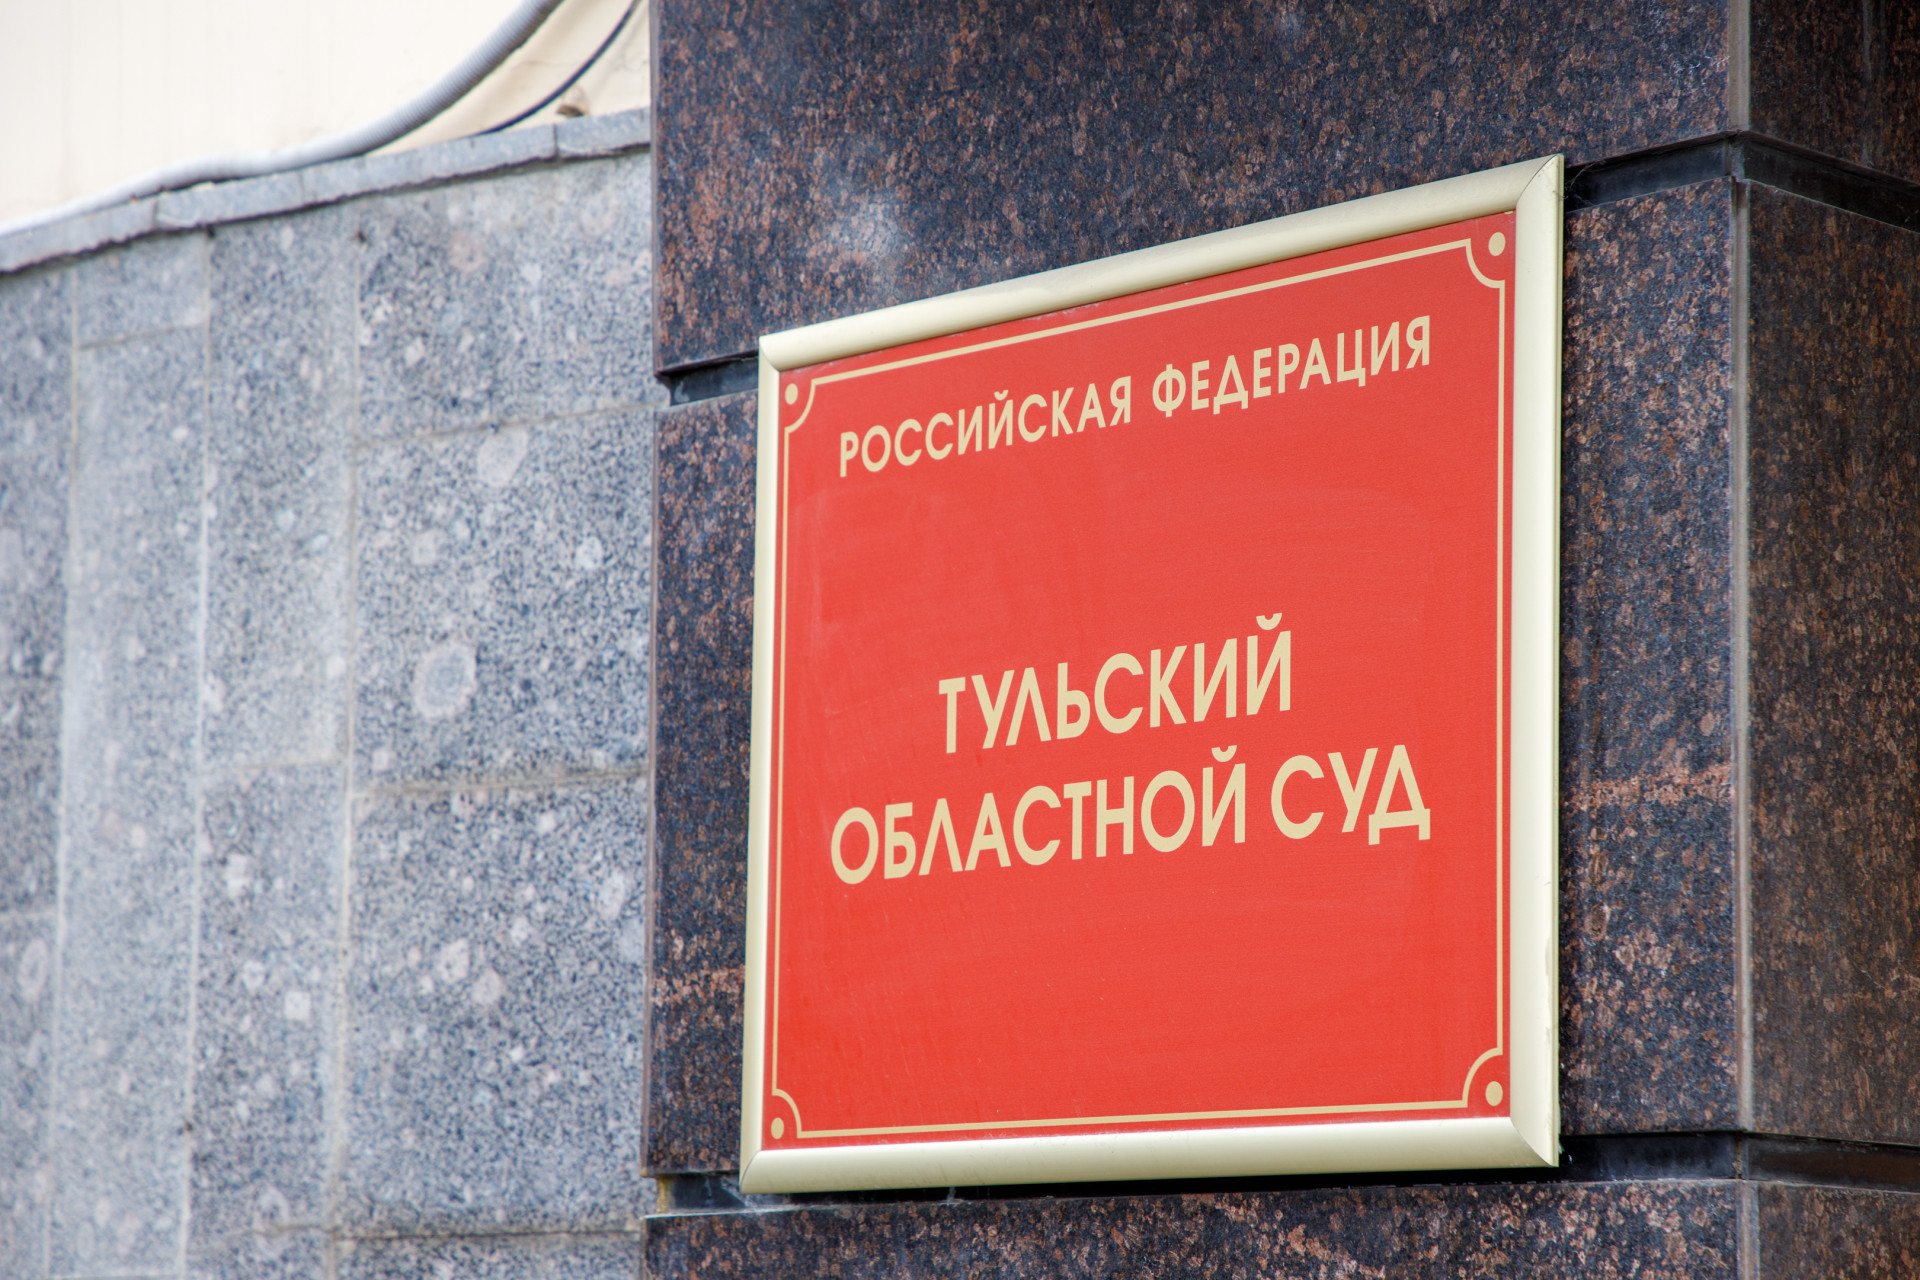 Суд отклонил апелляцию о незаконном бездействии администрации по поводу водоснабжения в Плавске